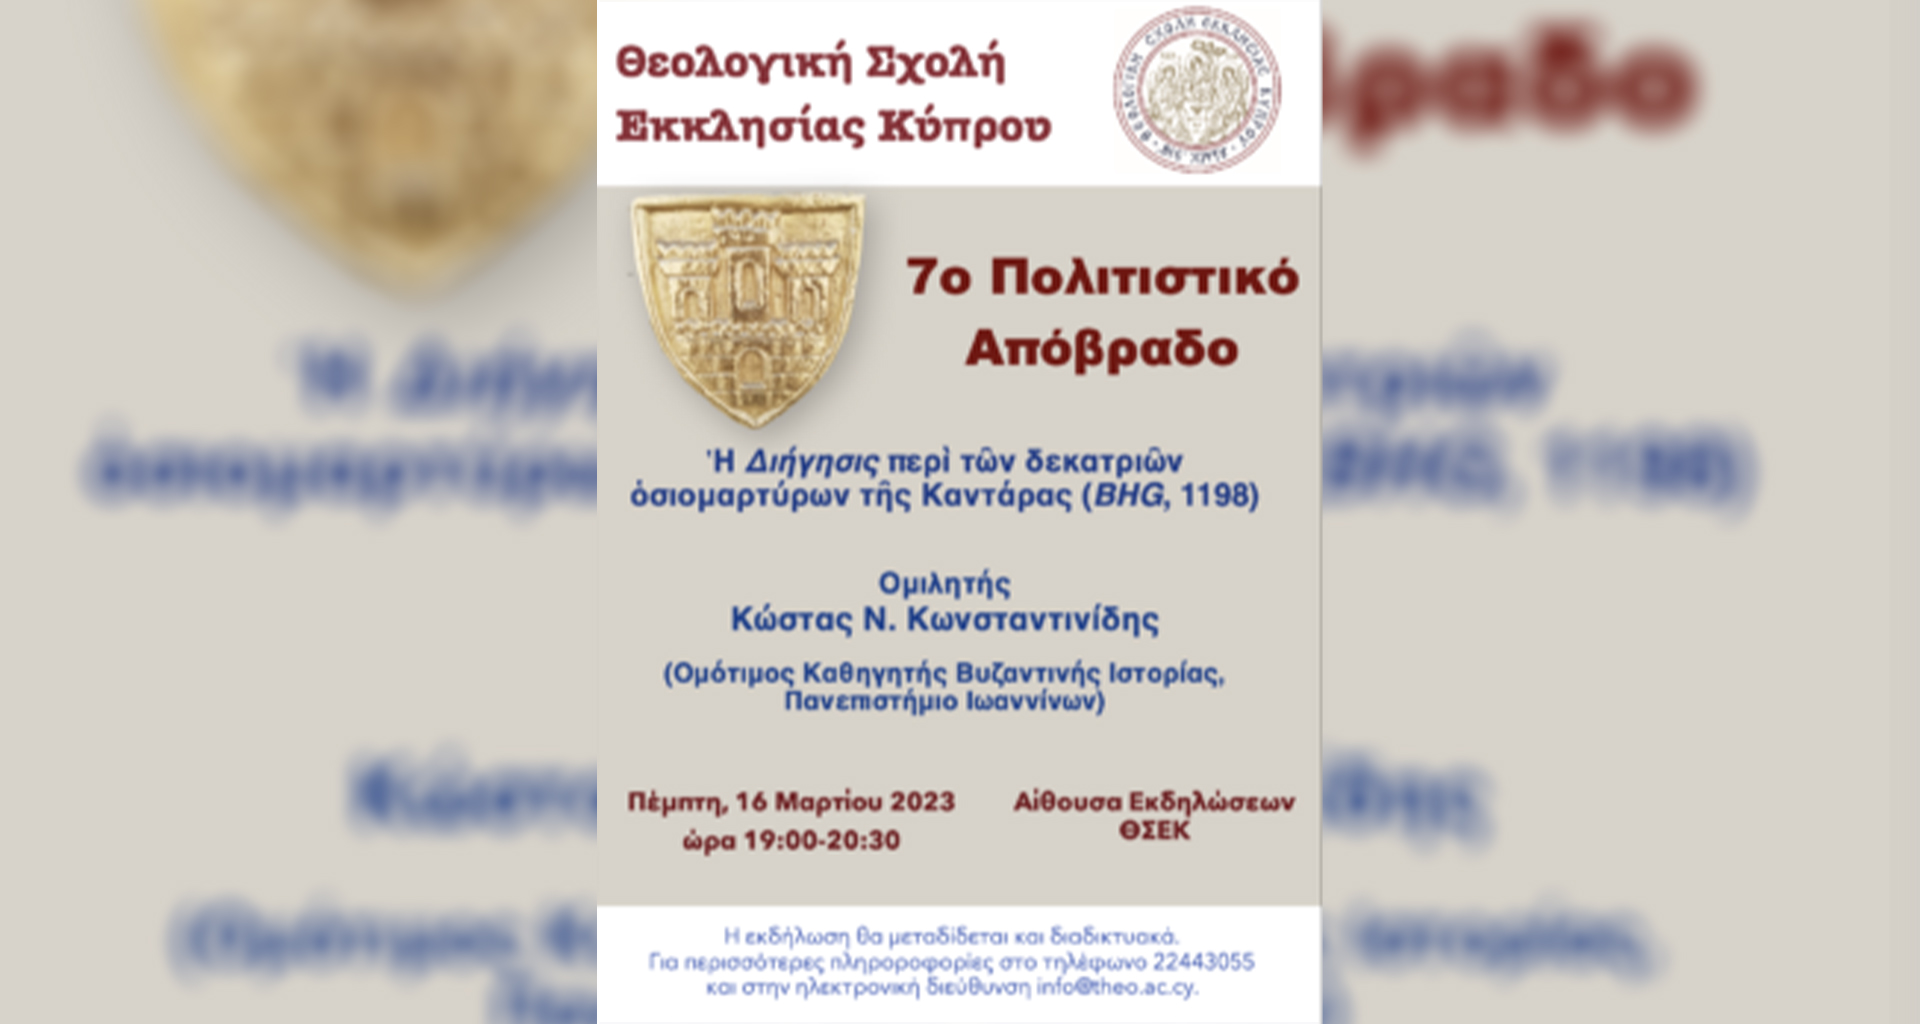 7ο Πολιτιστικό Απόβραδο Θεολογικής Σχολής Εκκλησίας Κύπρου (Πέμπτη, 16 Μαρτίου 2023)